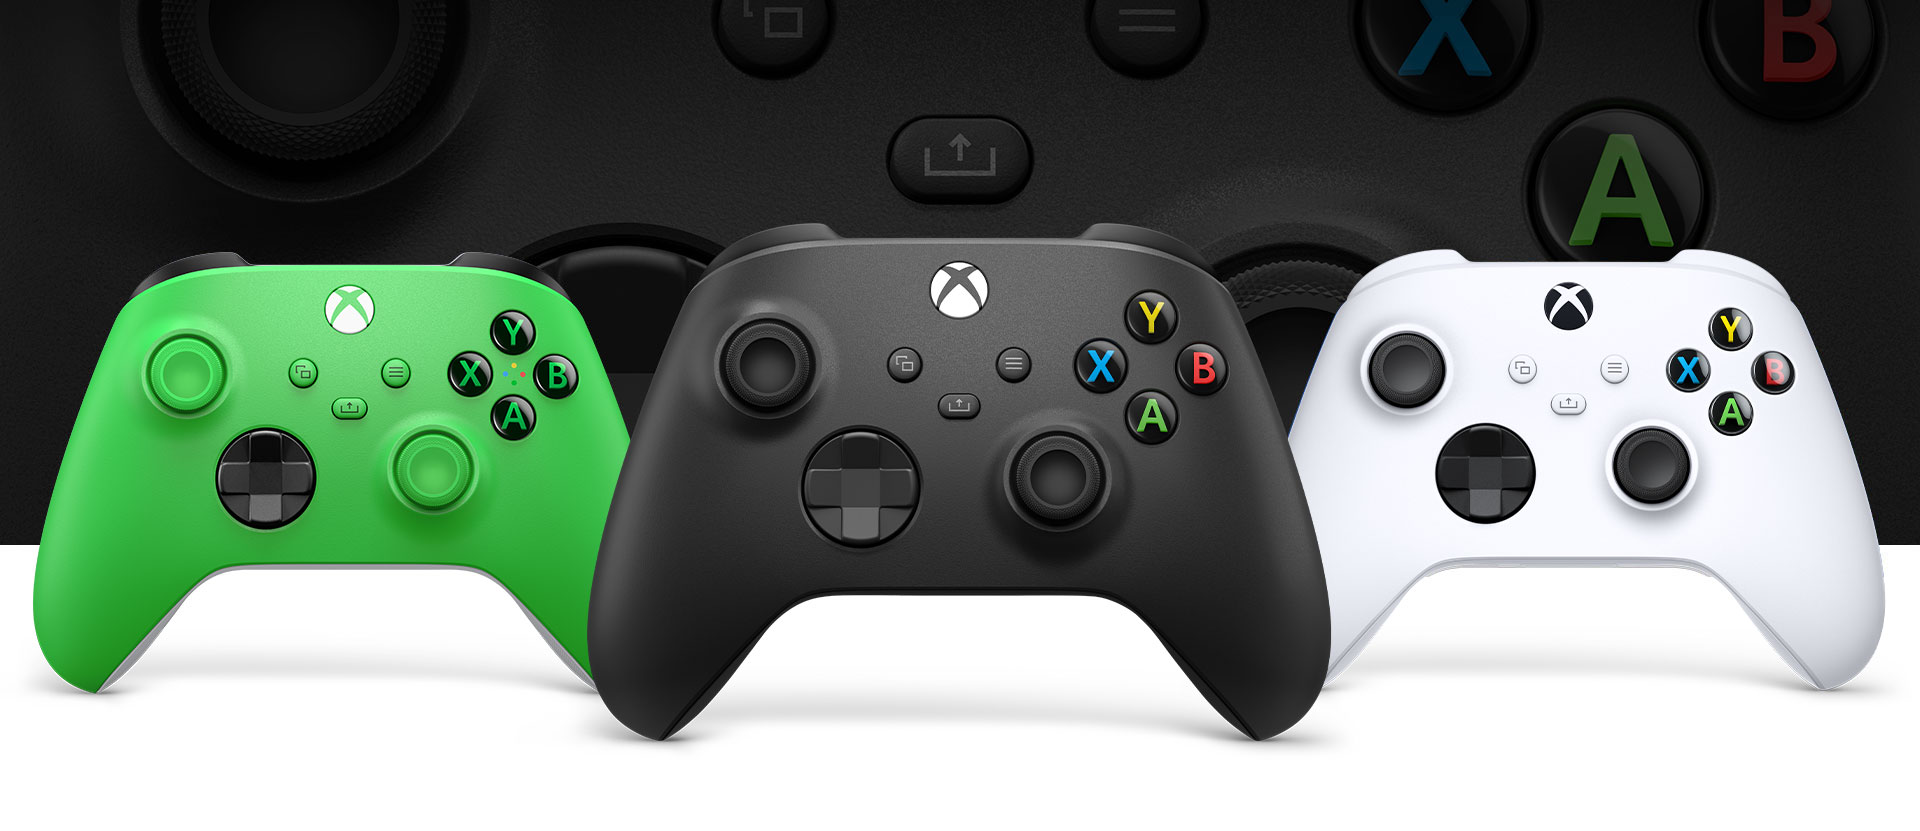 正面是 Xbox 磨砂黑控制器，左边是绿色，右边是冰雪白